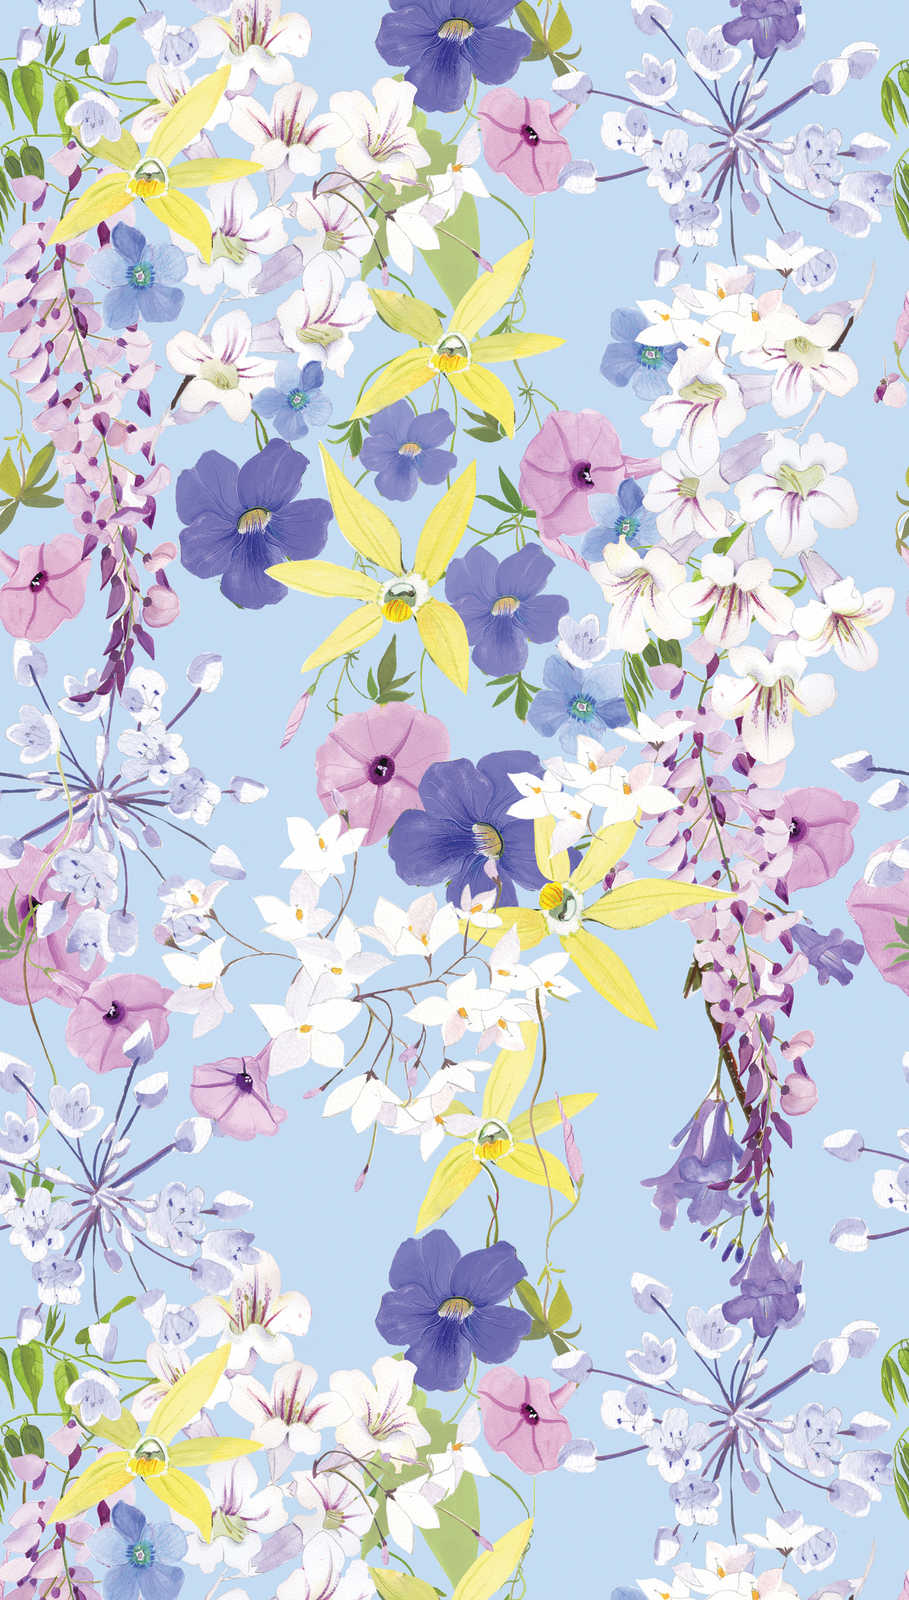             Onderlaag behang met bloemmotief in koele kleuren - veelkleurig, lila, geel
        